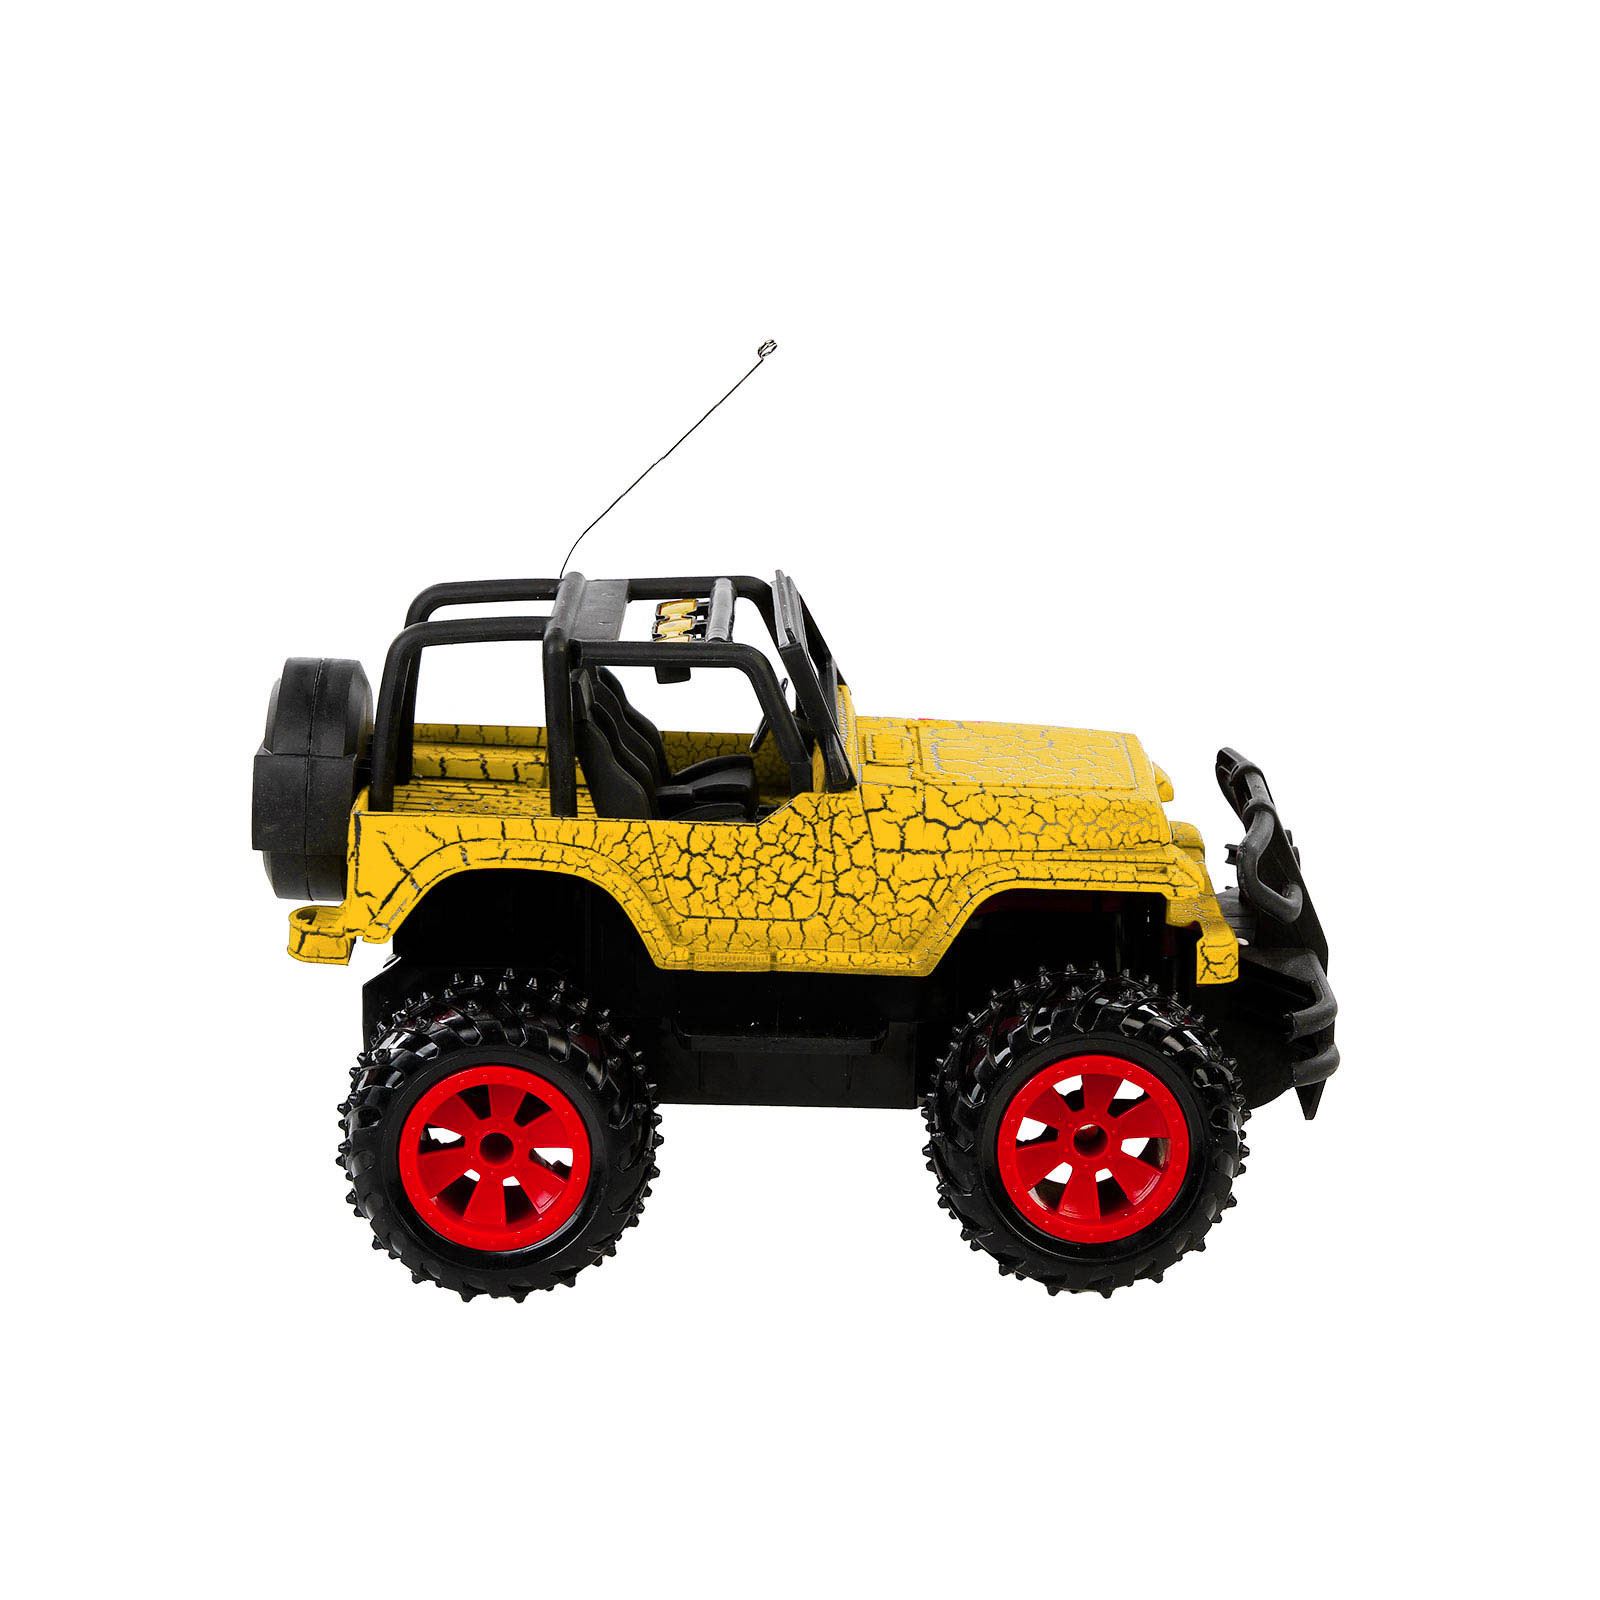 Can Oyuncak Uzaktan Kumandanlı Şarjlı Jeep Sarı